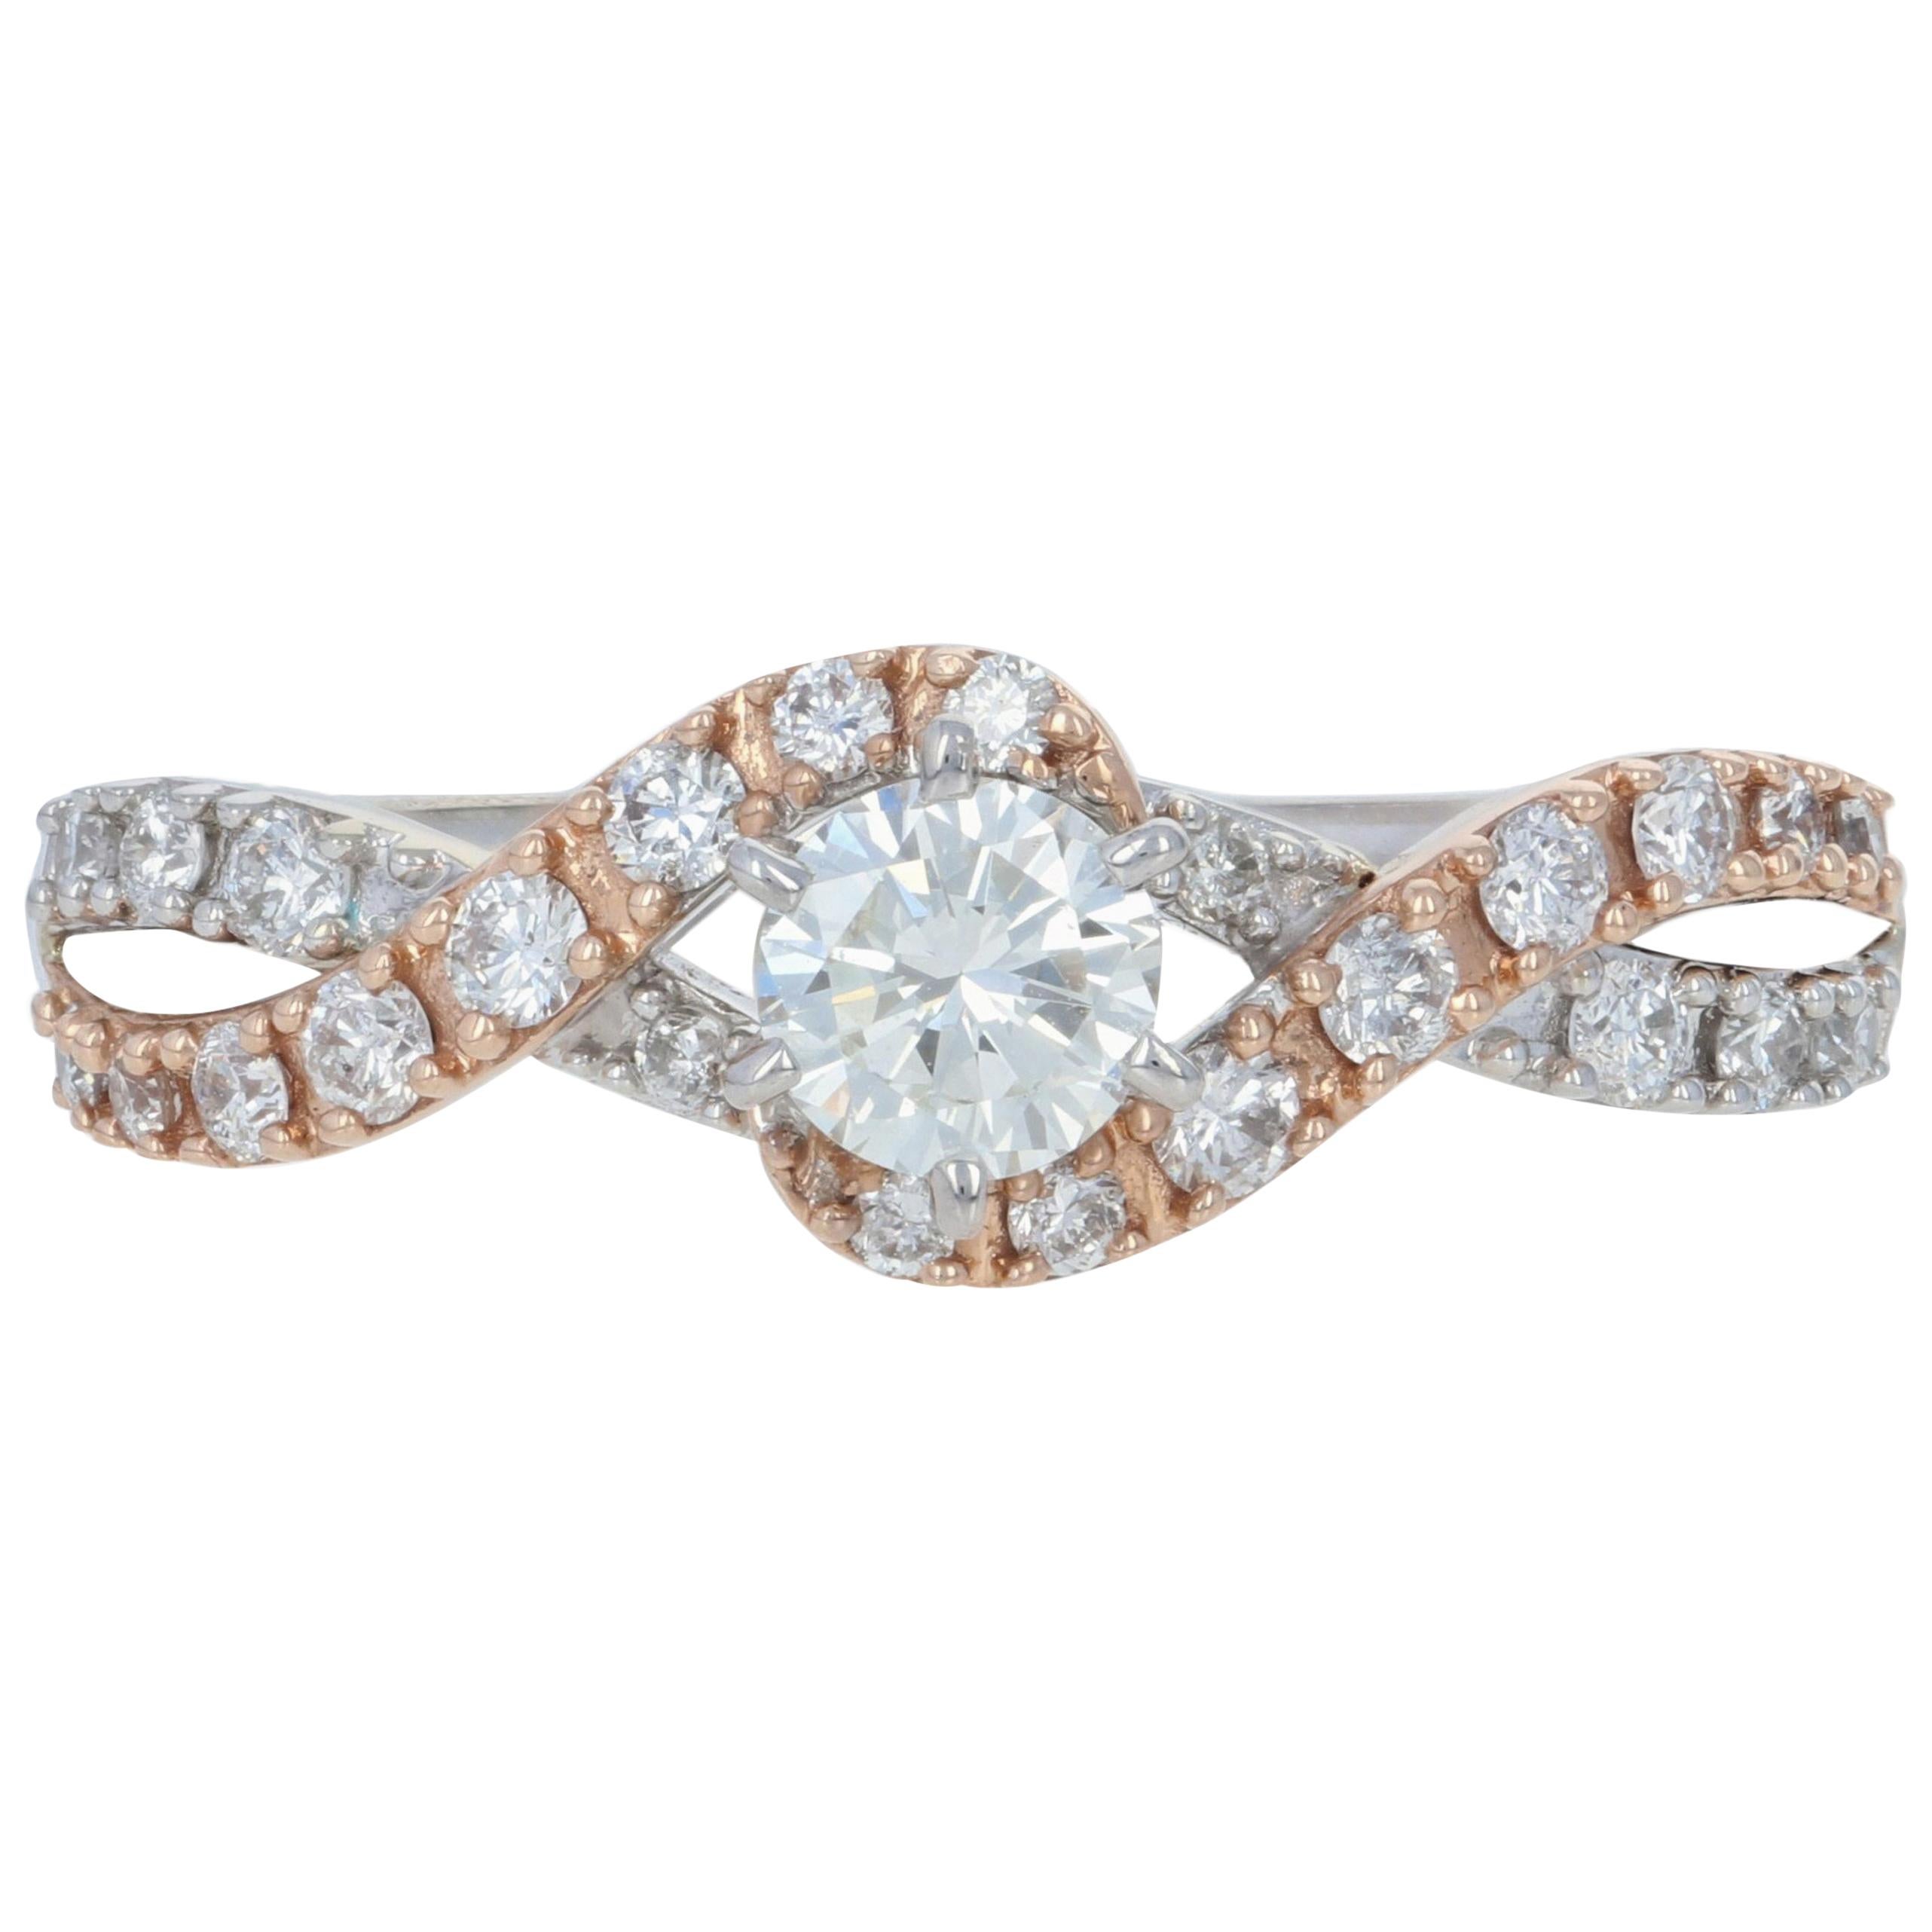 New Diamond Engagement Ring, 14 Karat White and Rose Gold .65 Carat